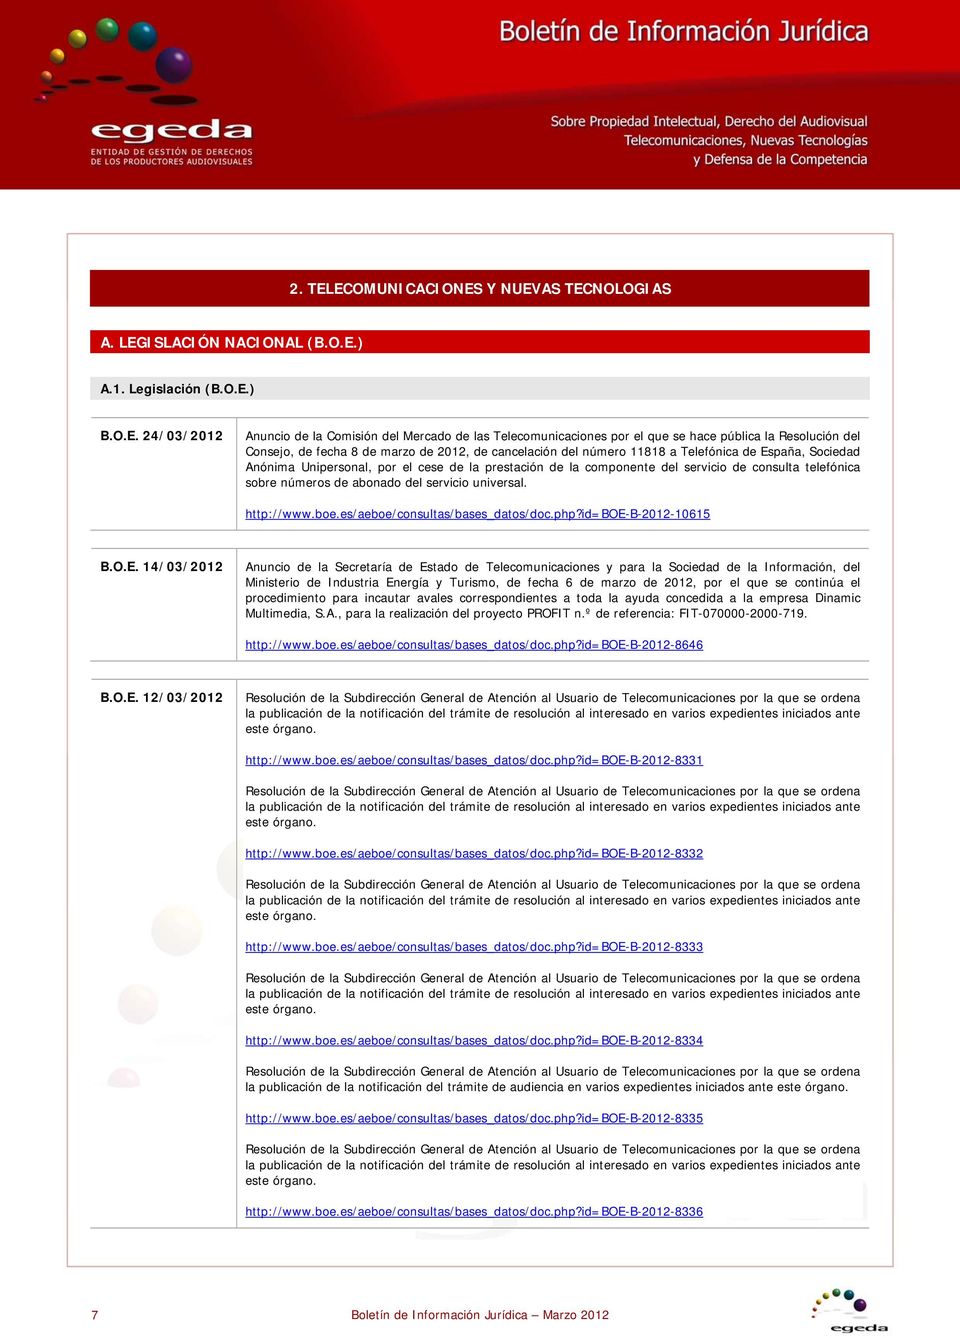 pública la Resolución del Consejo, de fecha 8 de marzo de 2012, de cancelación del número 11818 a Telefónica de España, Sociedad Anónima Unipersonal, por el cese de la prestación de la componente del